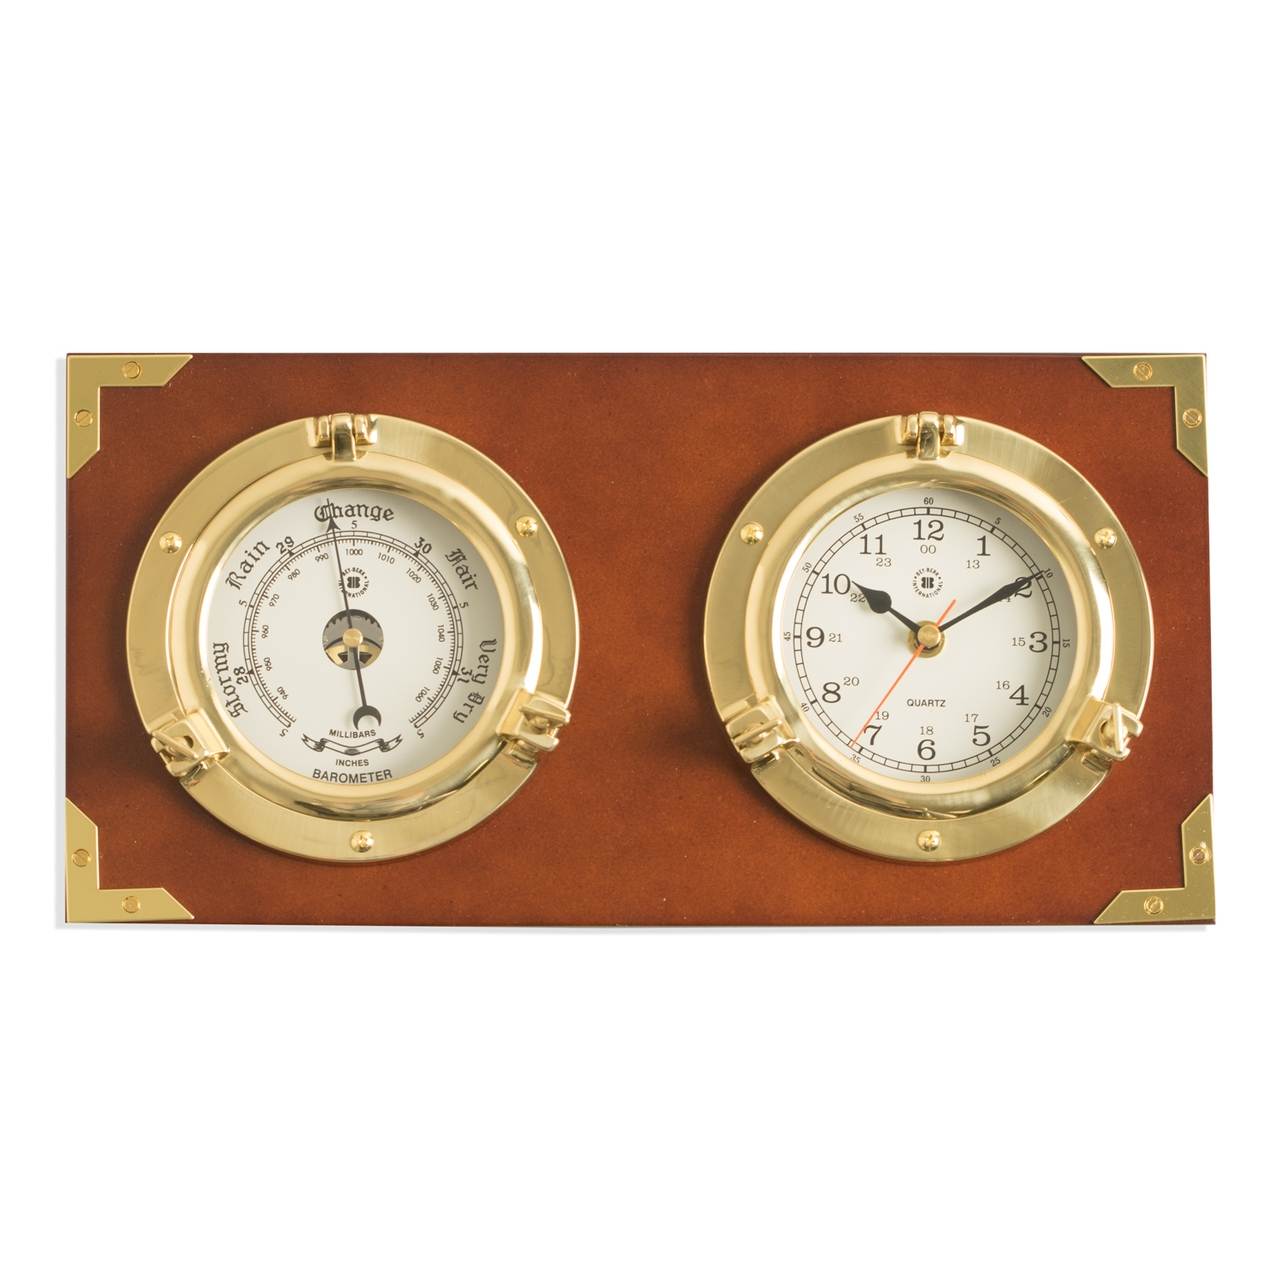 https://gonautical.com/7824/two-porthole-quartz-clock-and-barometer-on-teak-finished-wood-wall-mounts-horizontally.jpg